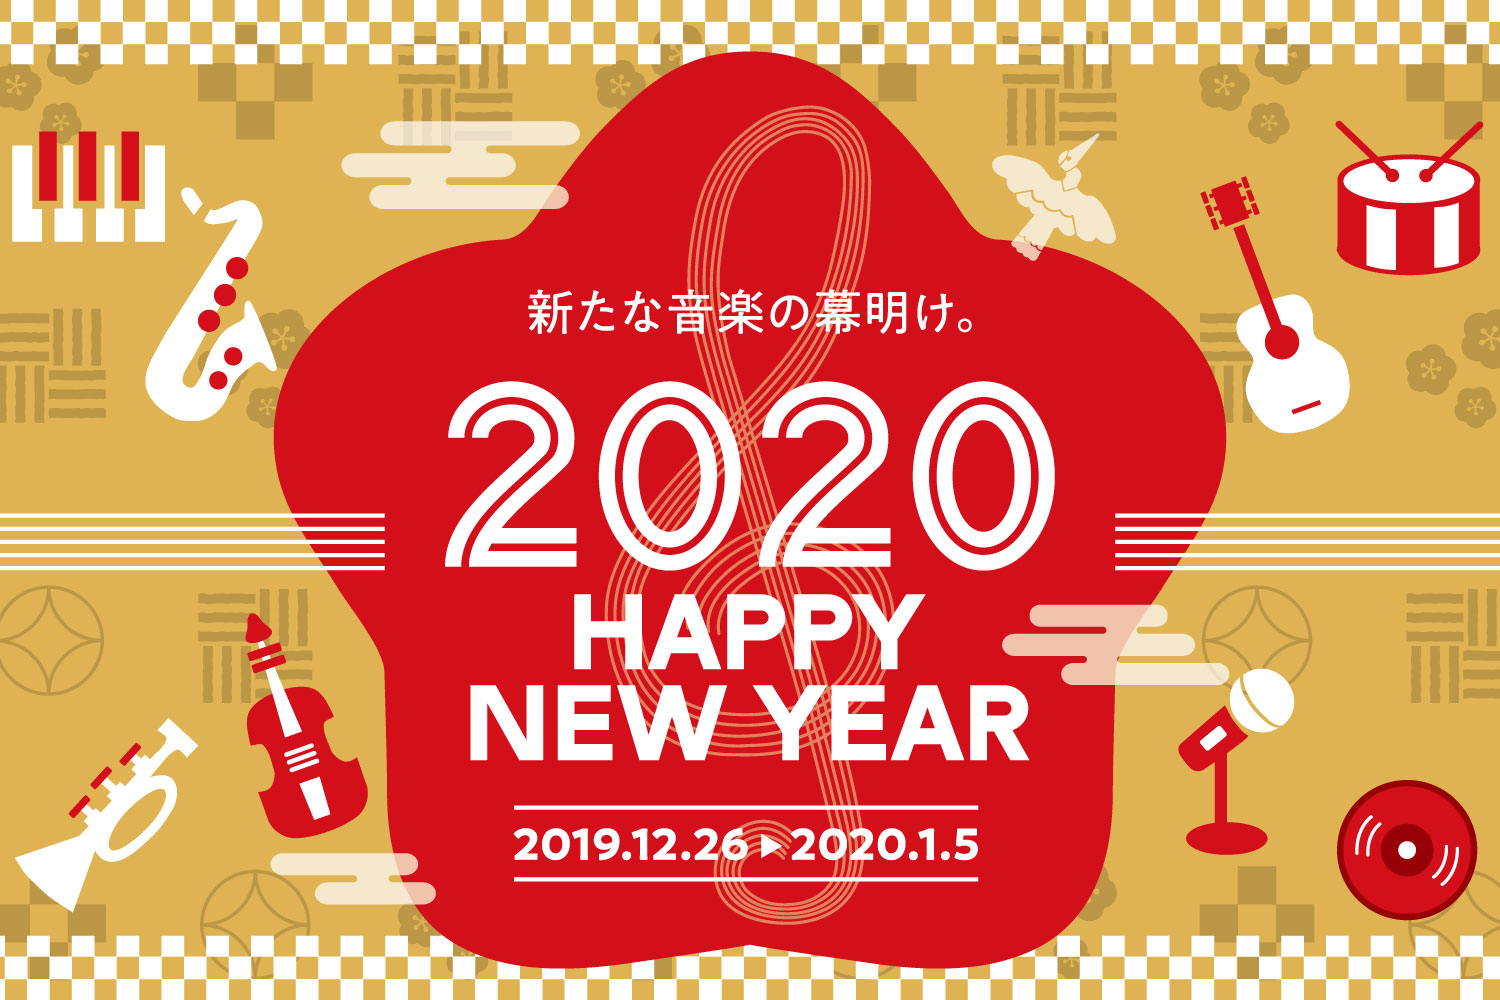 【小倉店】2020年 初売りセール・フェアのご案内